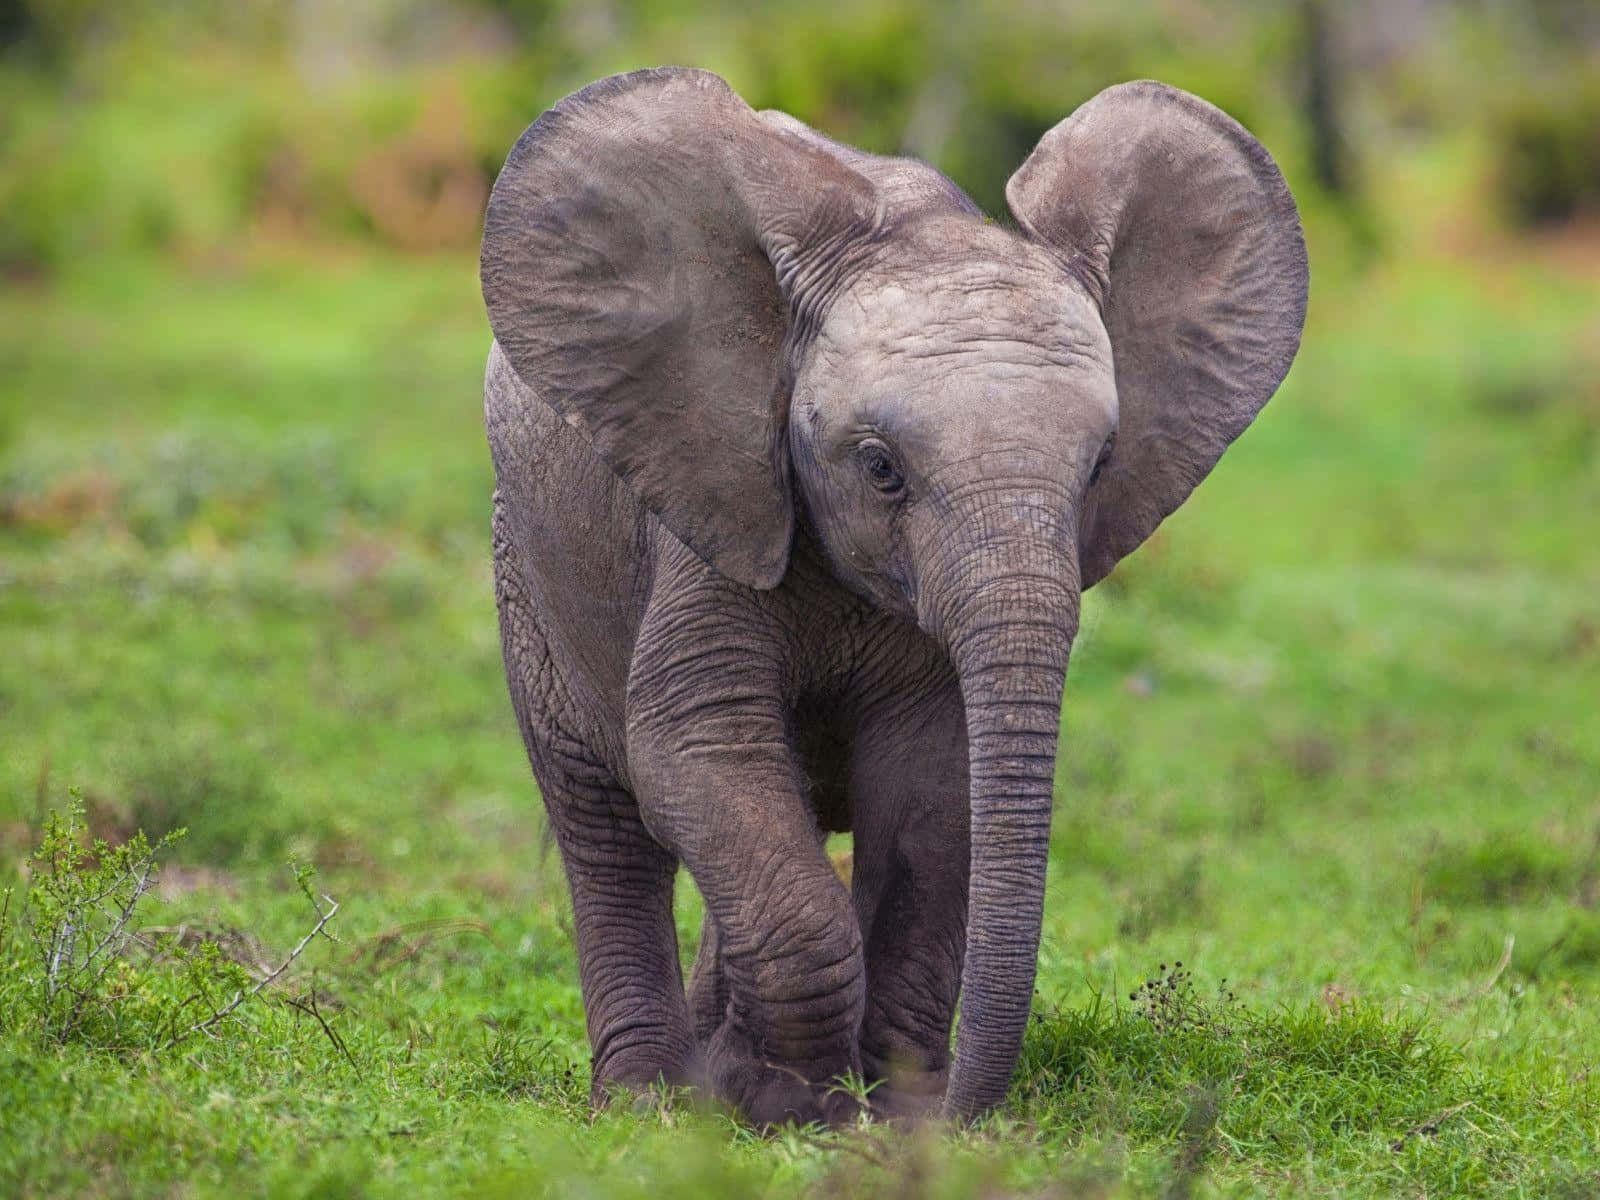 A Baby Elephant Walking Through A Field